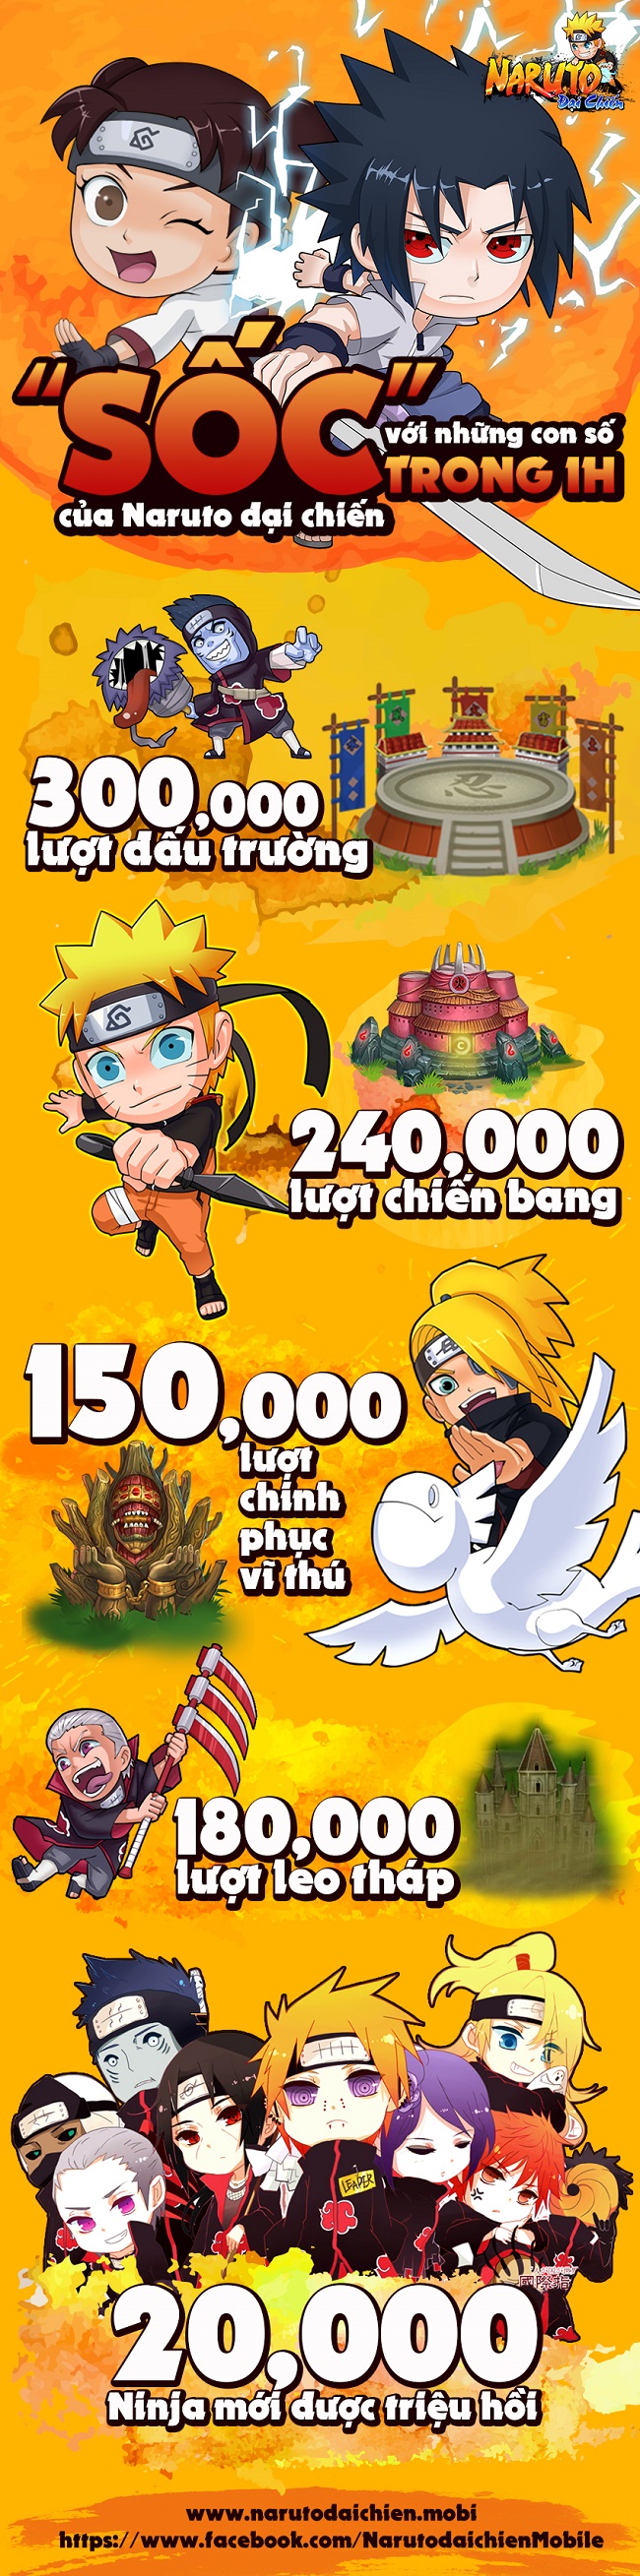 Infographics - Những con số gây “sốc” trong 1 giờ của Naruto Đại Chiến Mobi